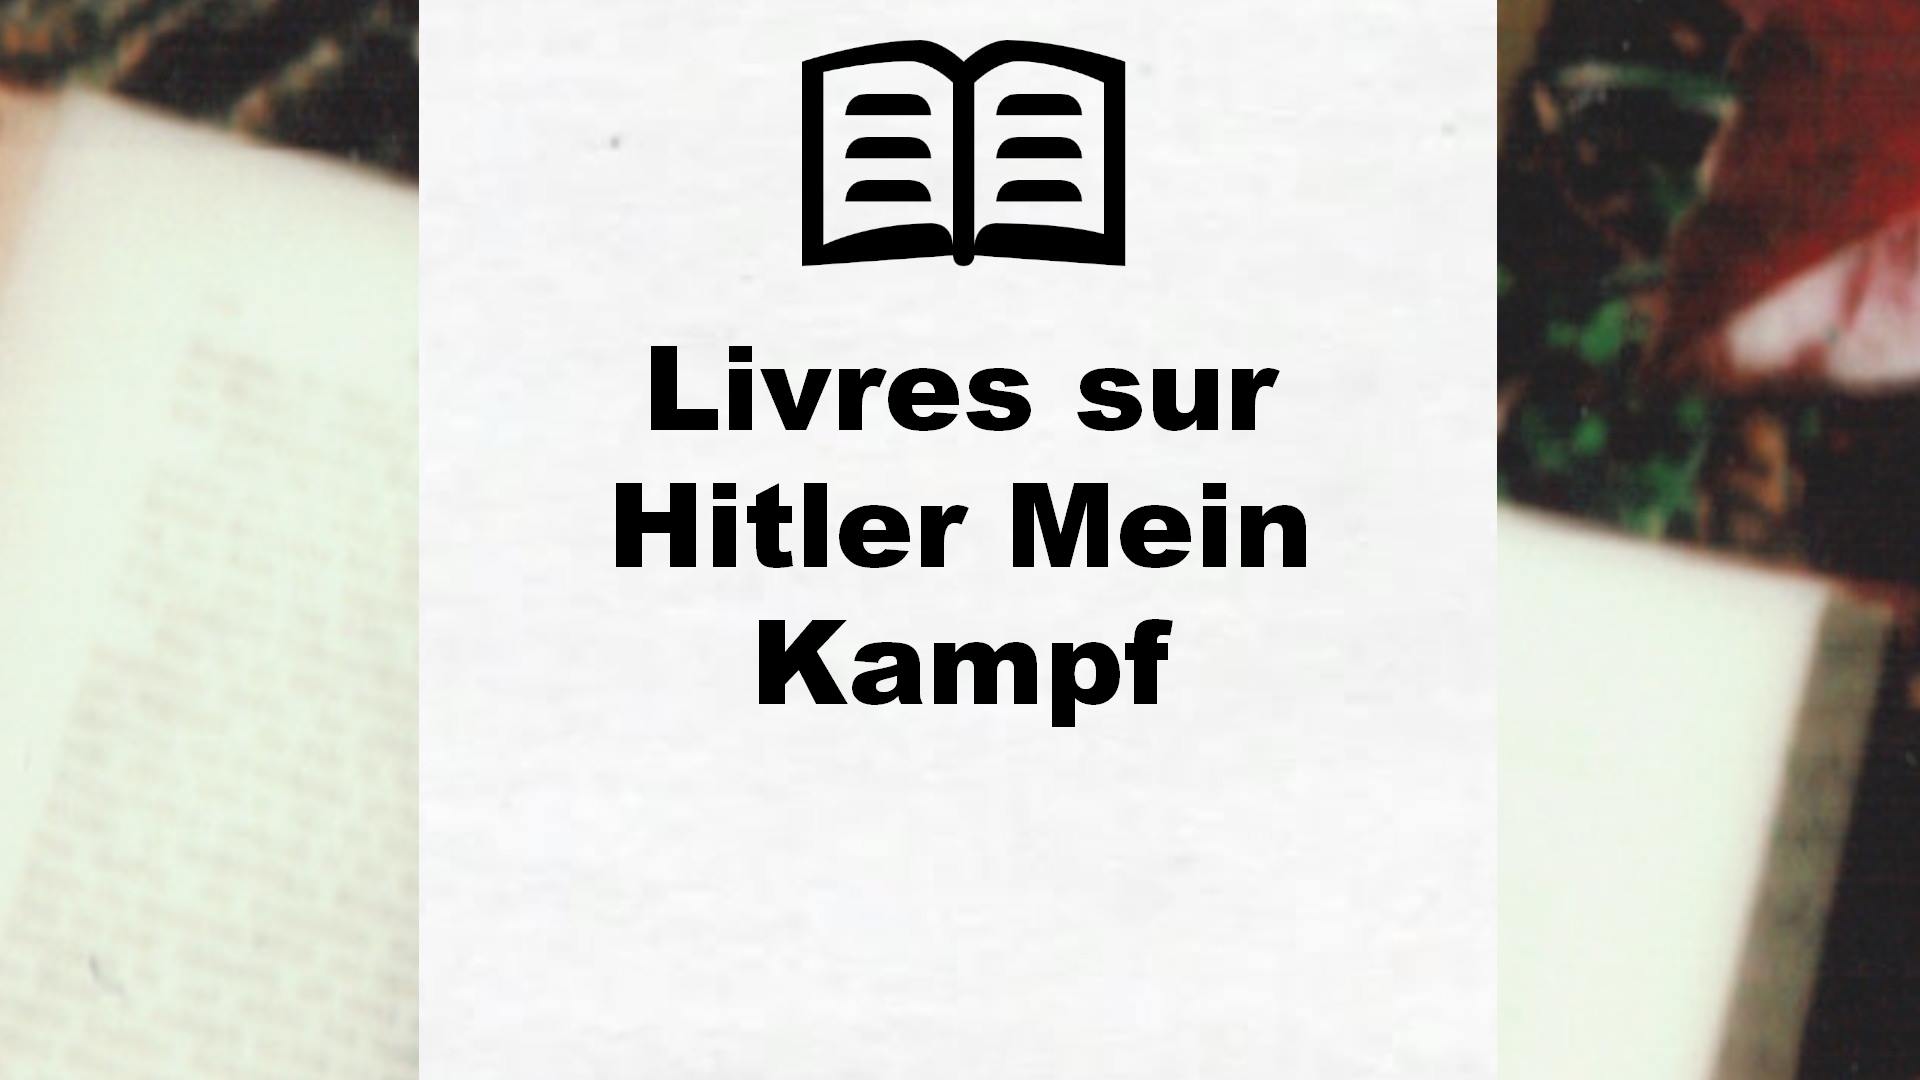 Livres sur Hitler Mein Kampf